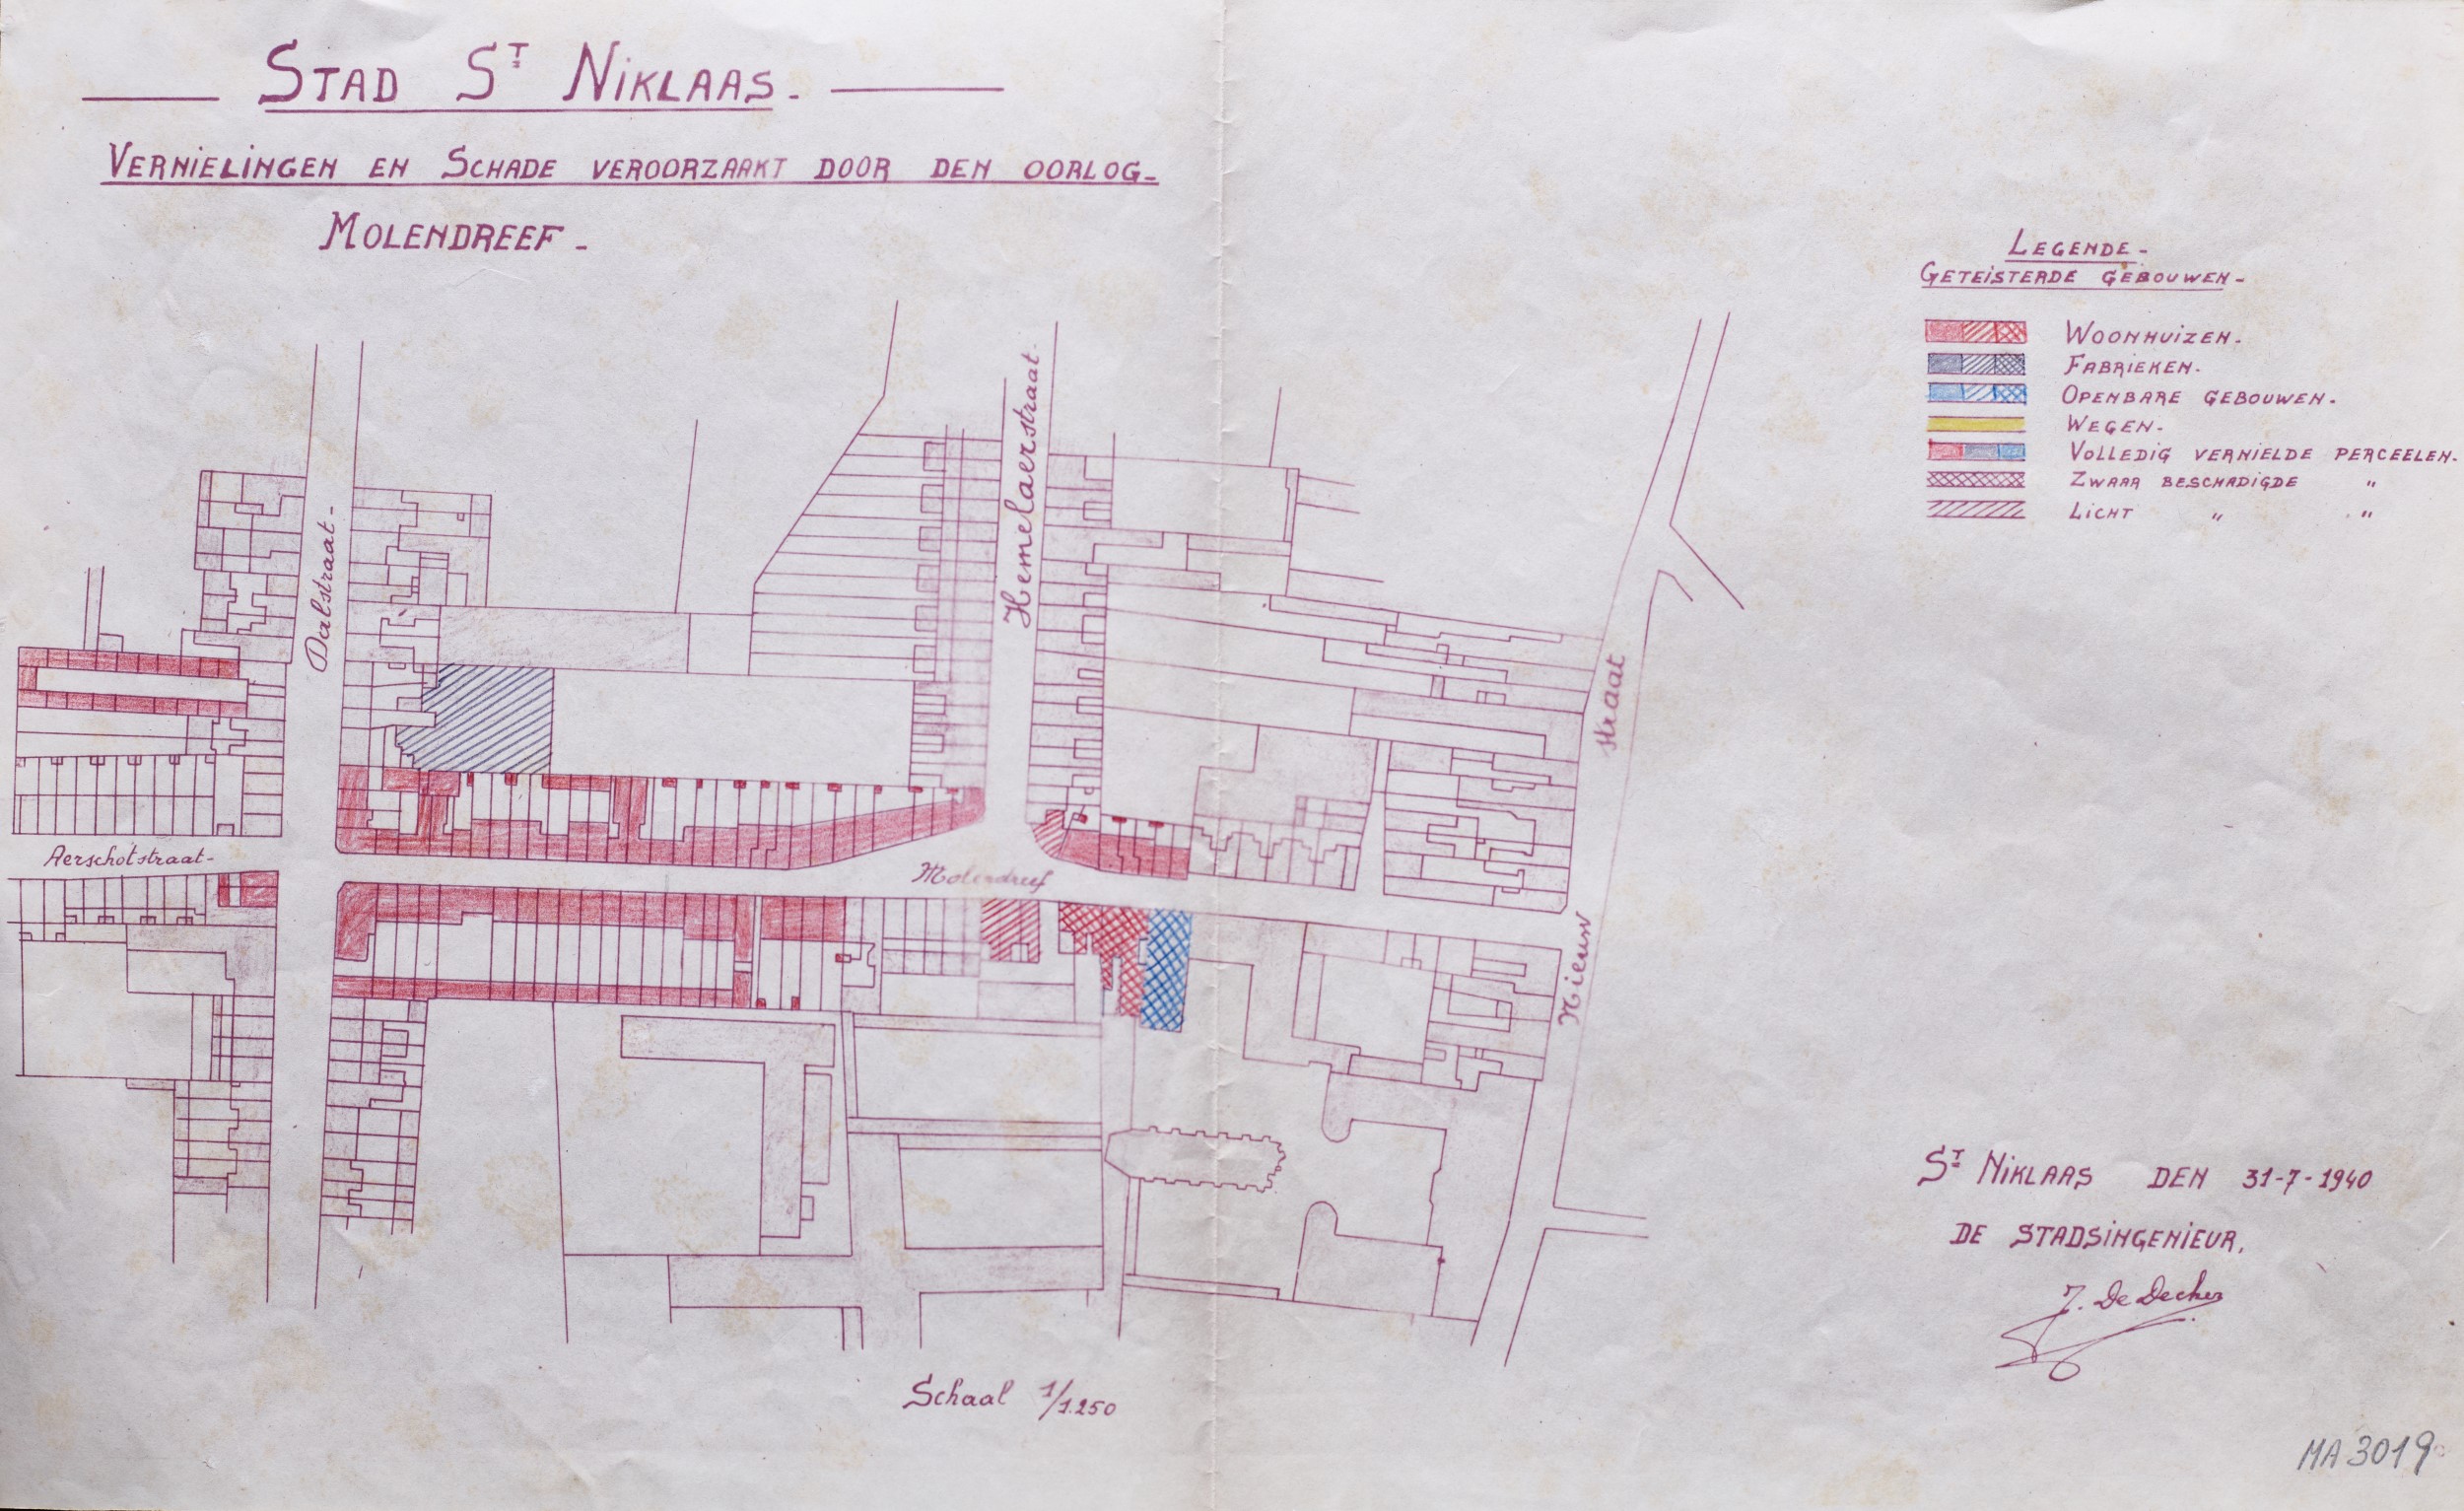 Grondplan van de Molendreef met aanduiding van de schade, 31 juli 1940 (MA 3019) © archief Stad Sint-Niklaas